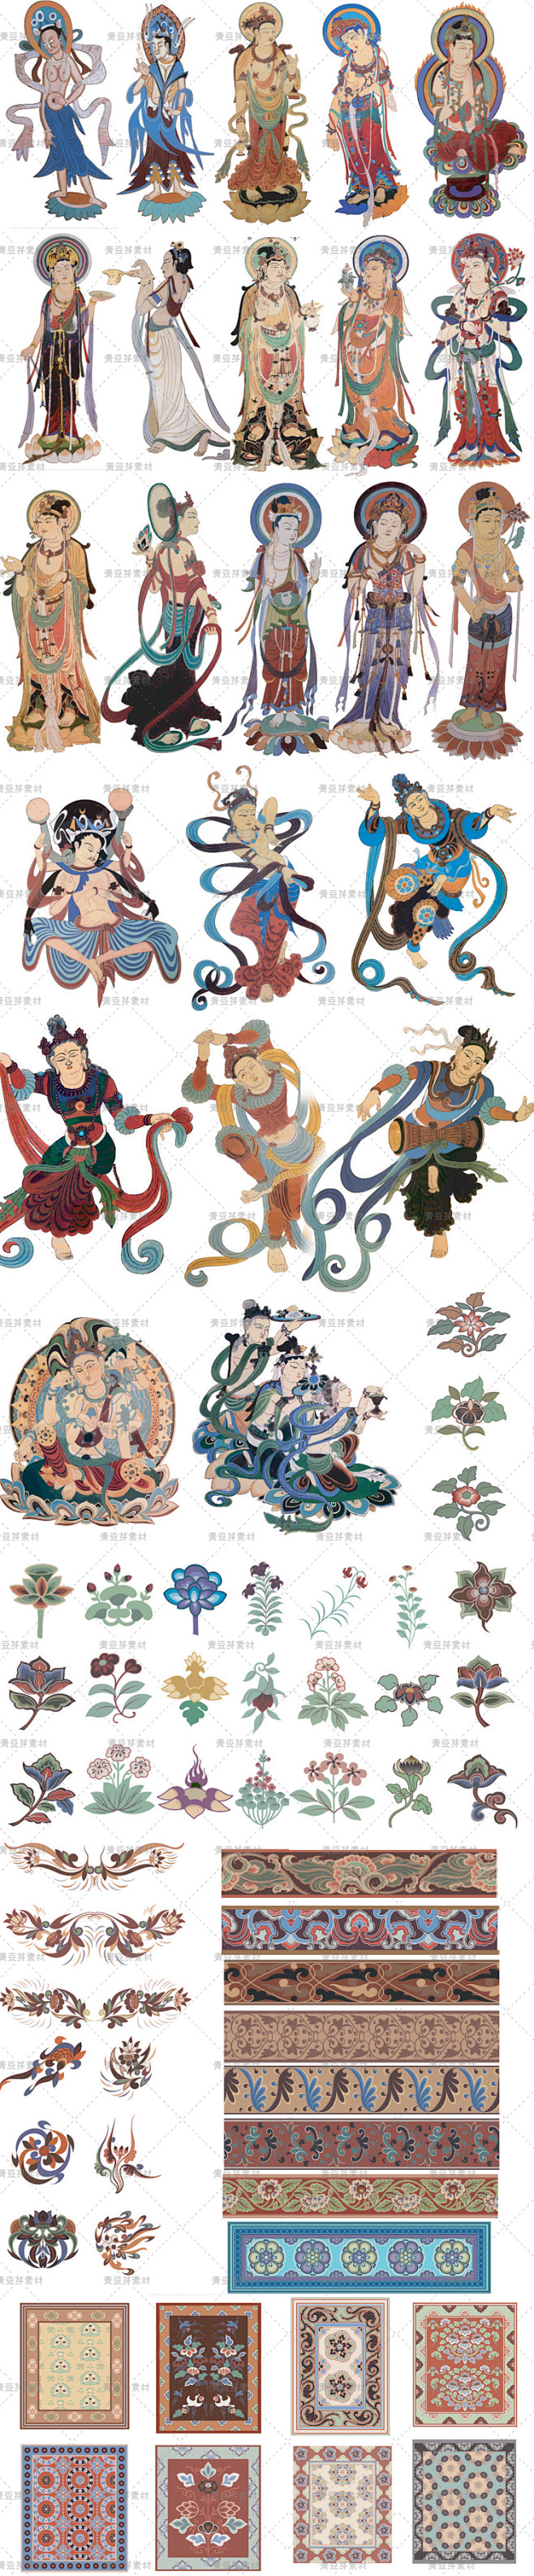 中国古典传统绘画敦煌莫高窟壁画AI cd...